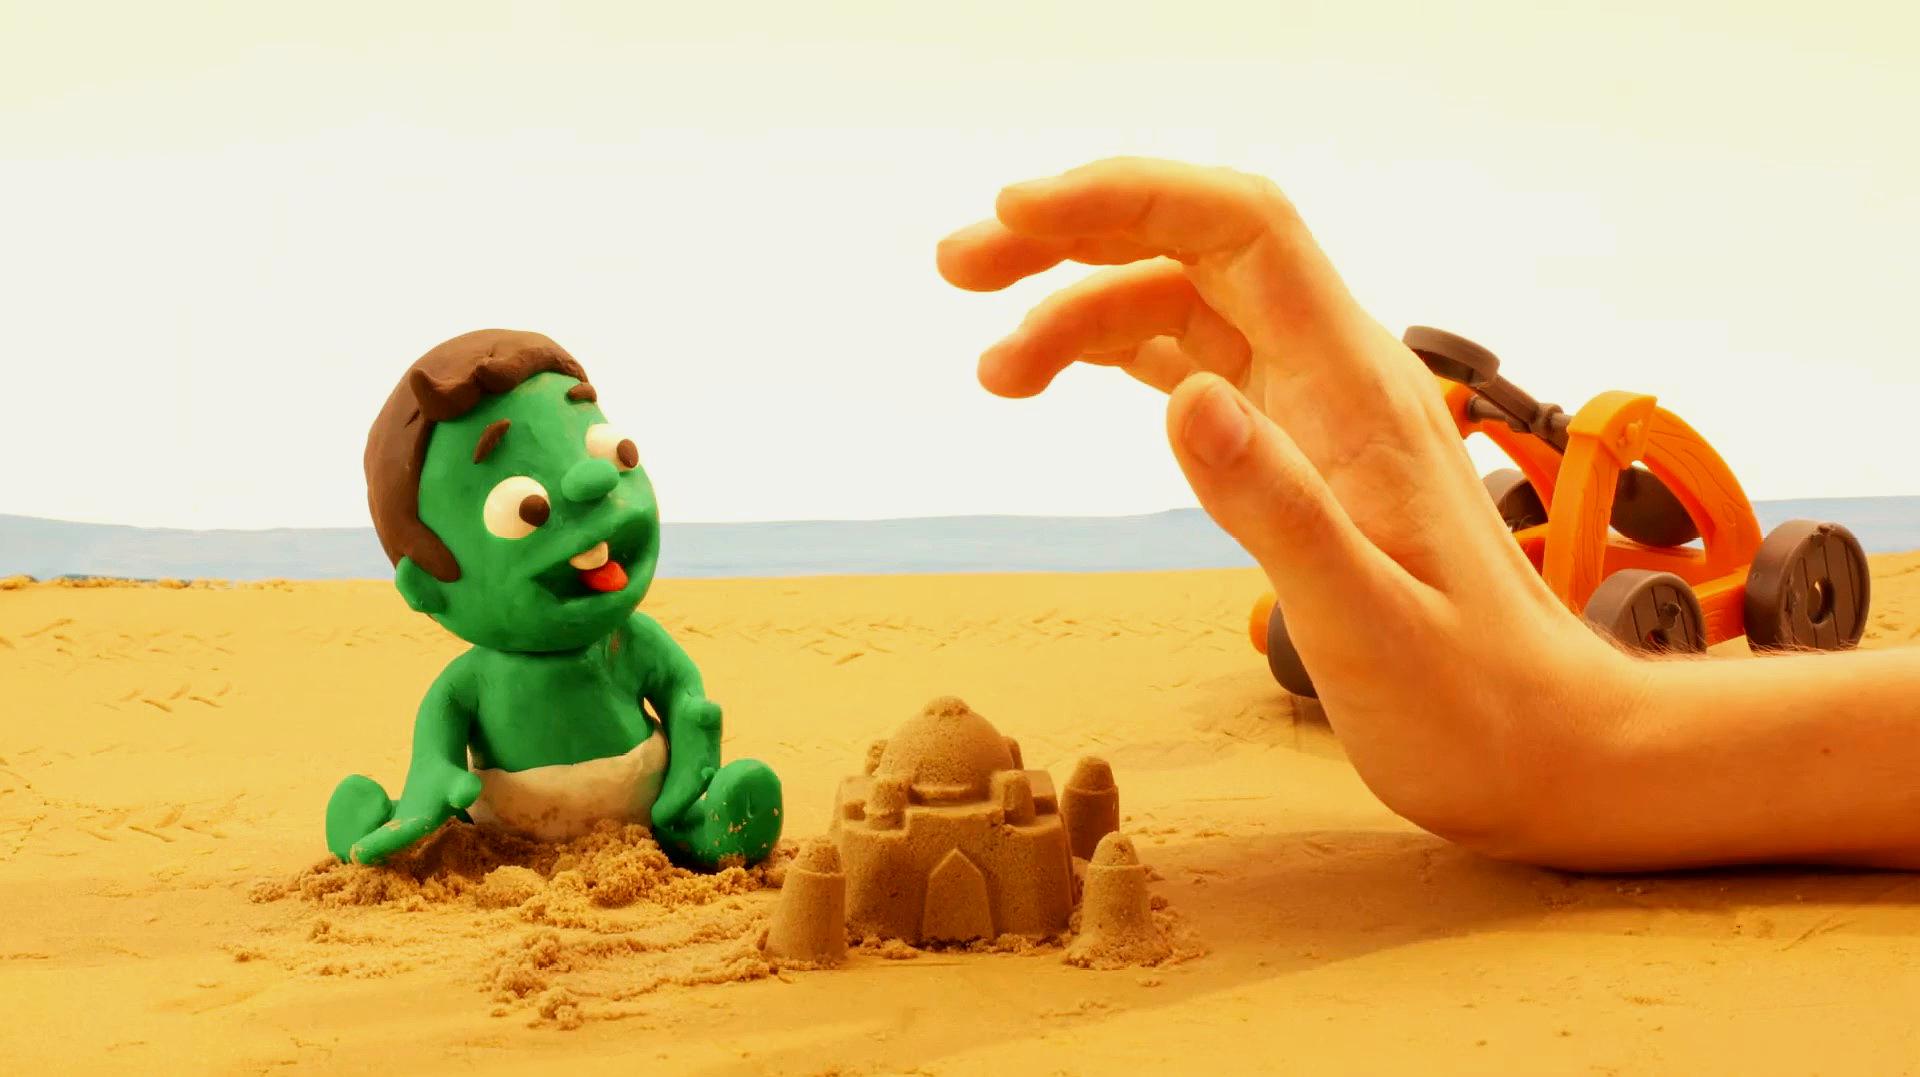 橡皮泥少儿动画:小朋友在沙滩上玩沙子,城堡堆的真漂亮